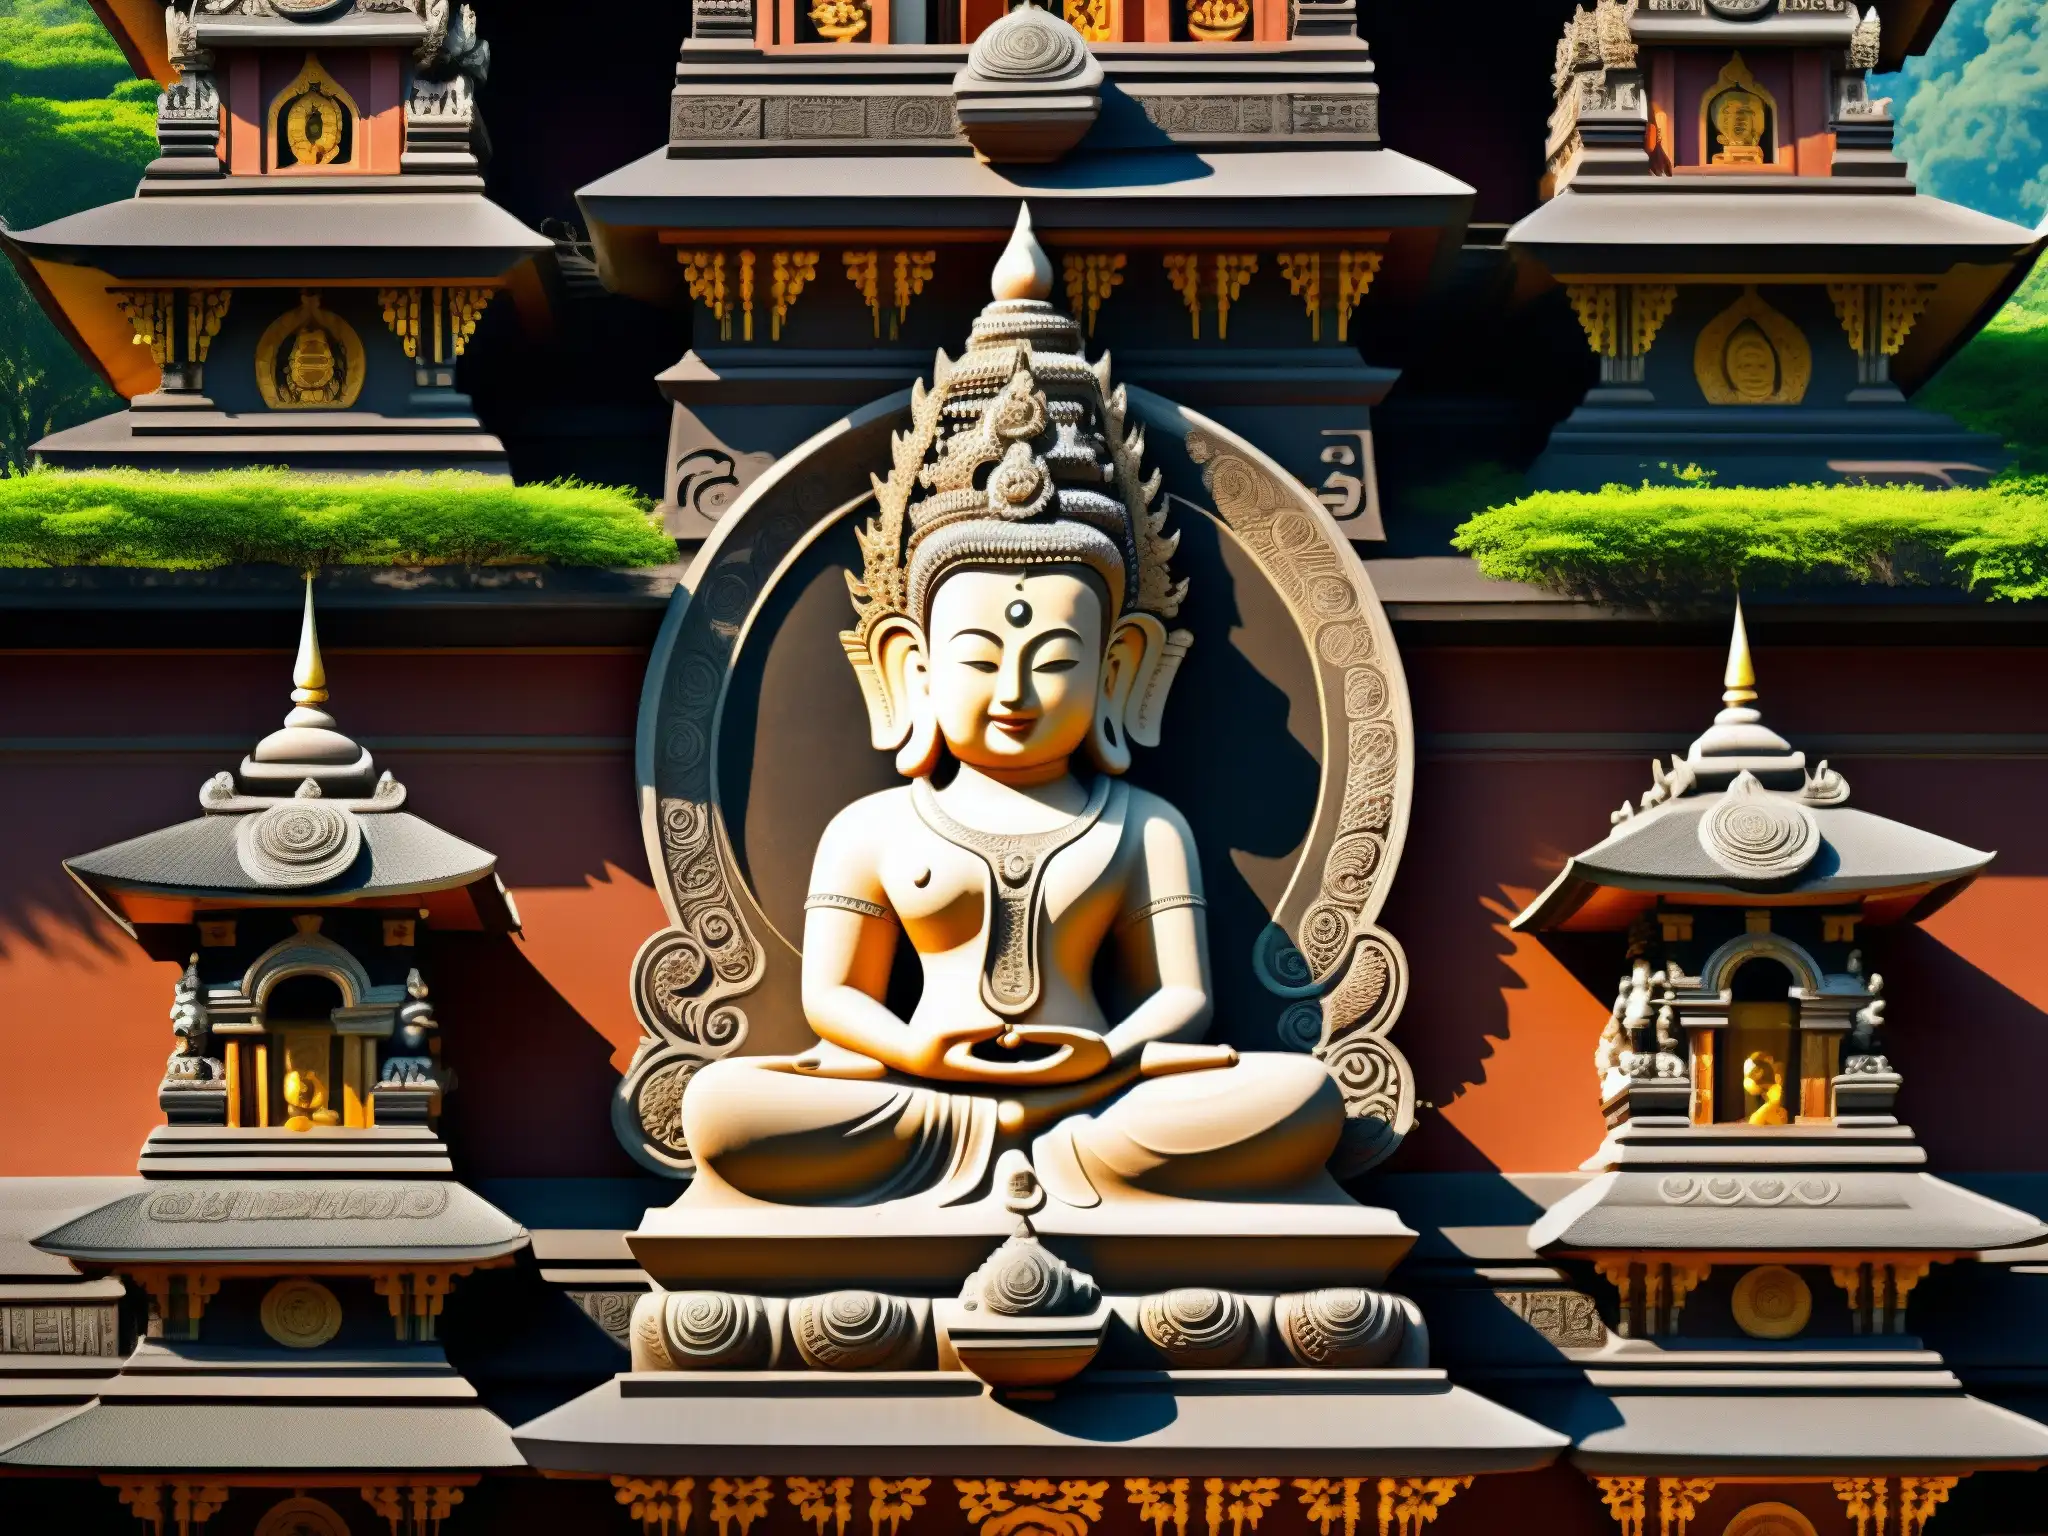 Detalles intrincados del templo Chinnamasta, con sombras dramáticas y atmósfera enigmática